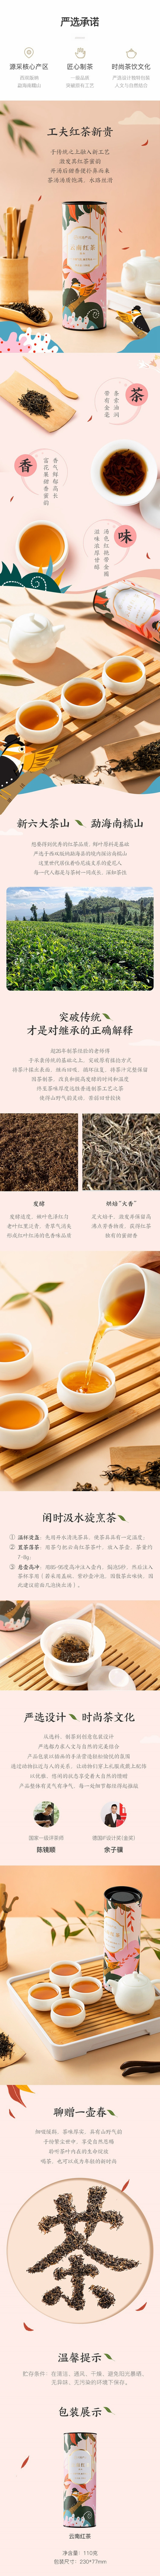 【中国直邮】网易严选 云南红茶(滇红) 110克 新茶浓香茶叶